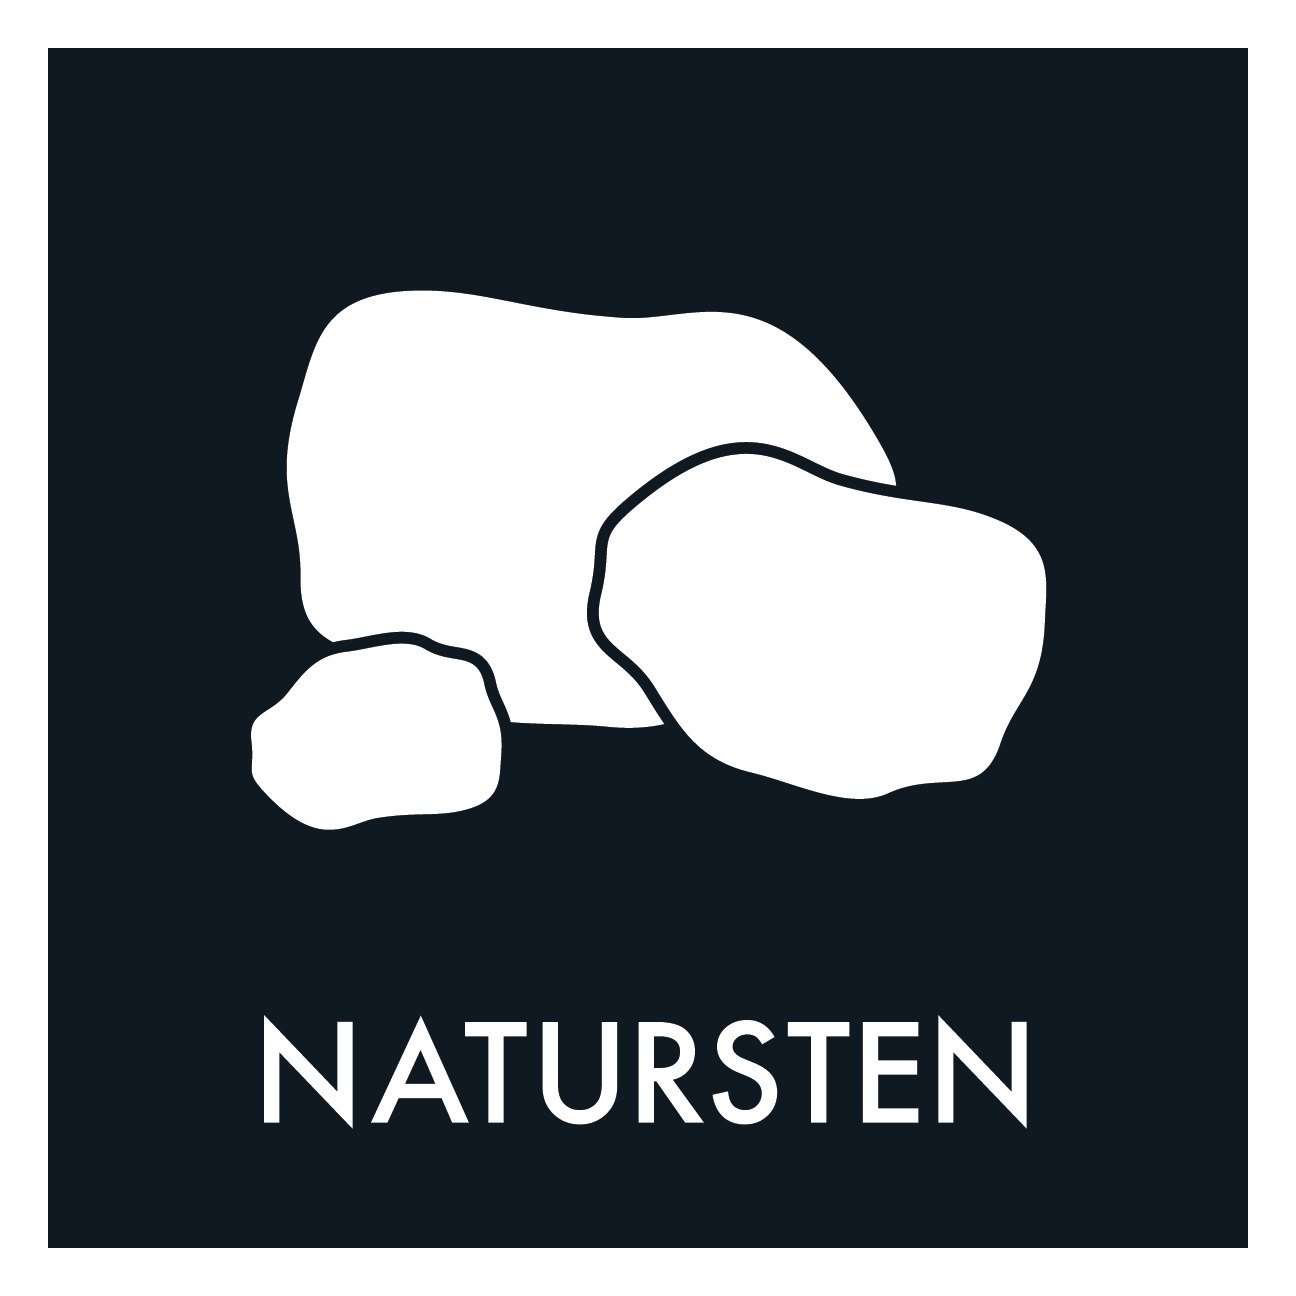 Natursten sort skilt - Dansk Affaldssortering